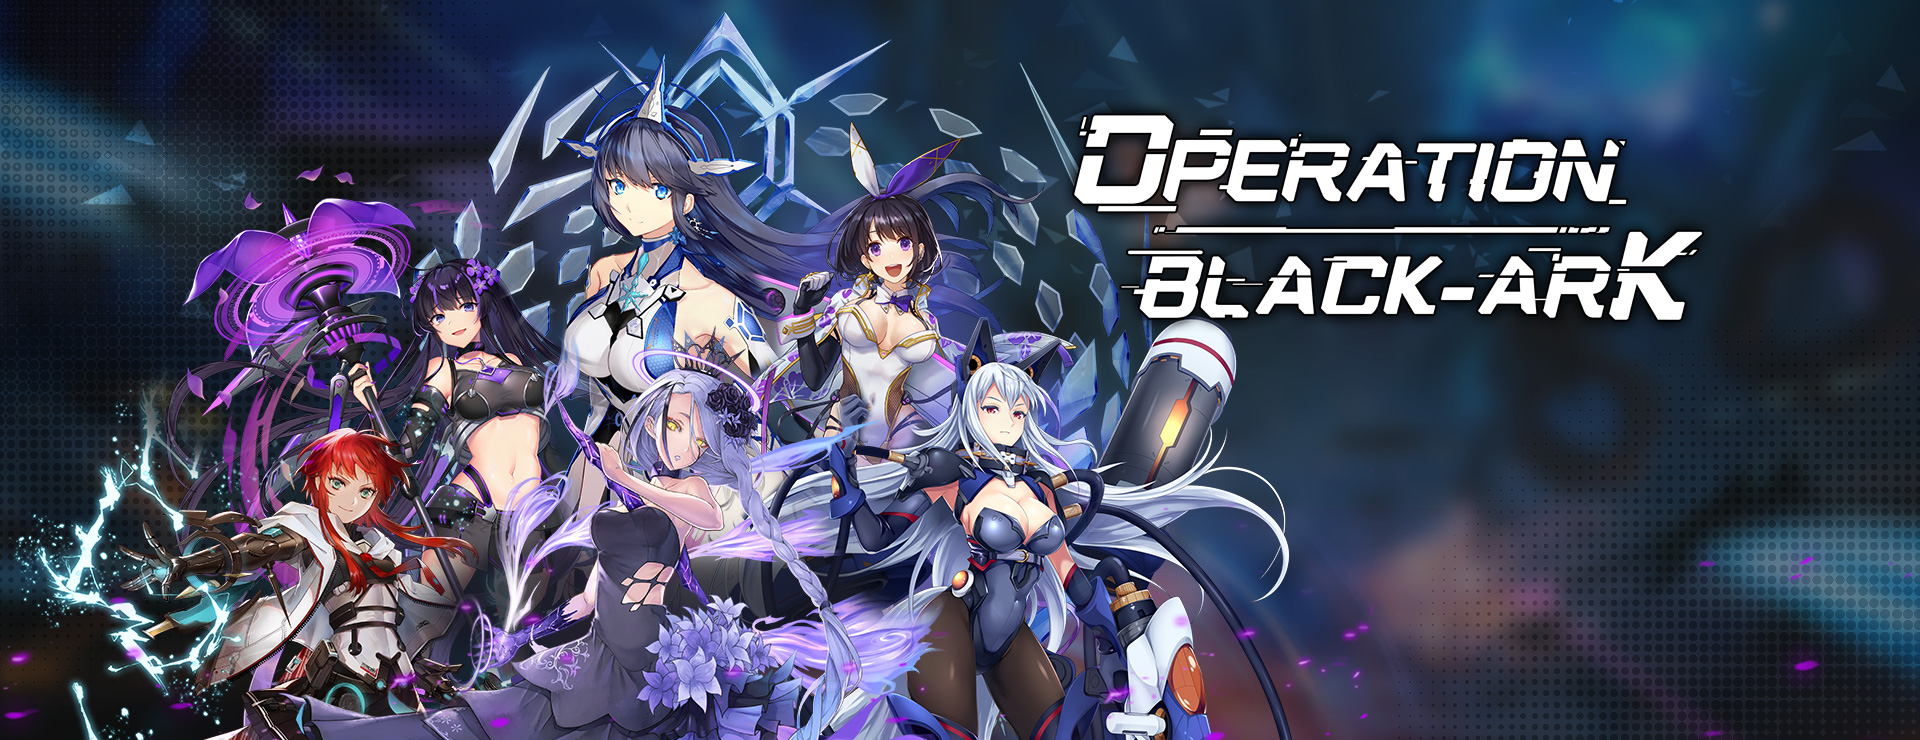 Operation Black-Ark - SLG Game